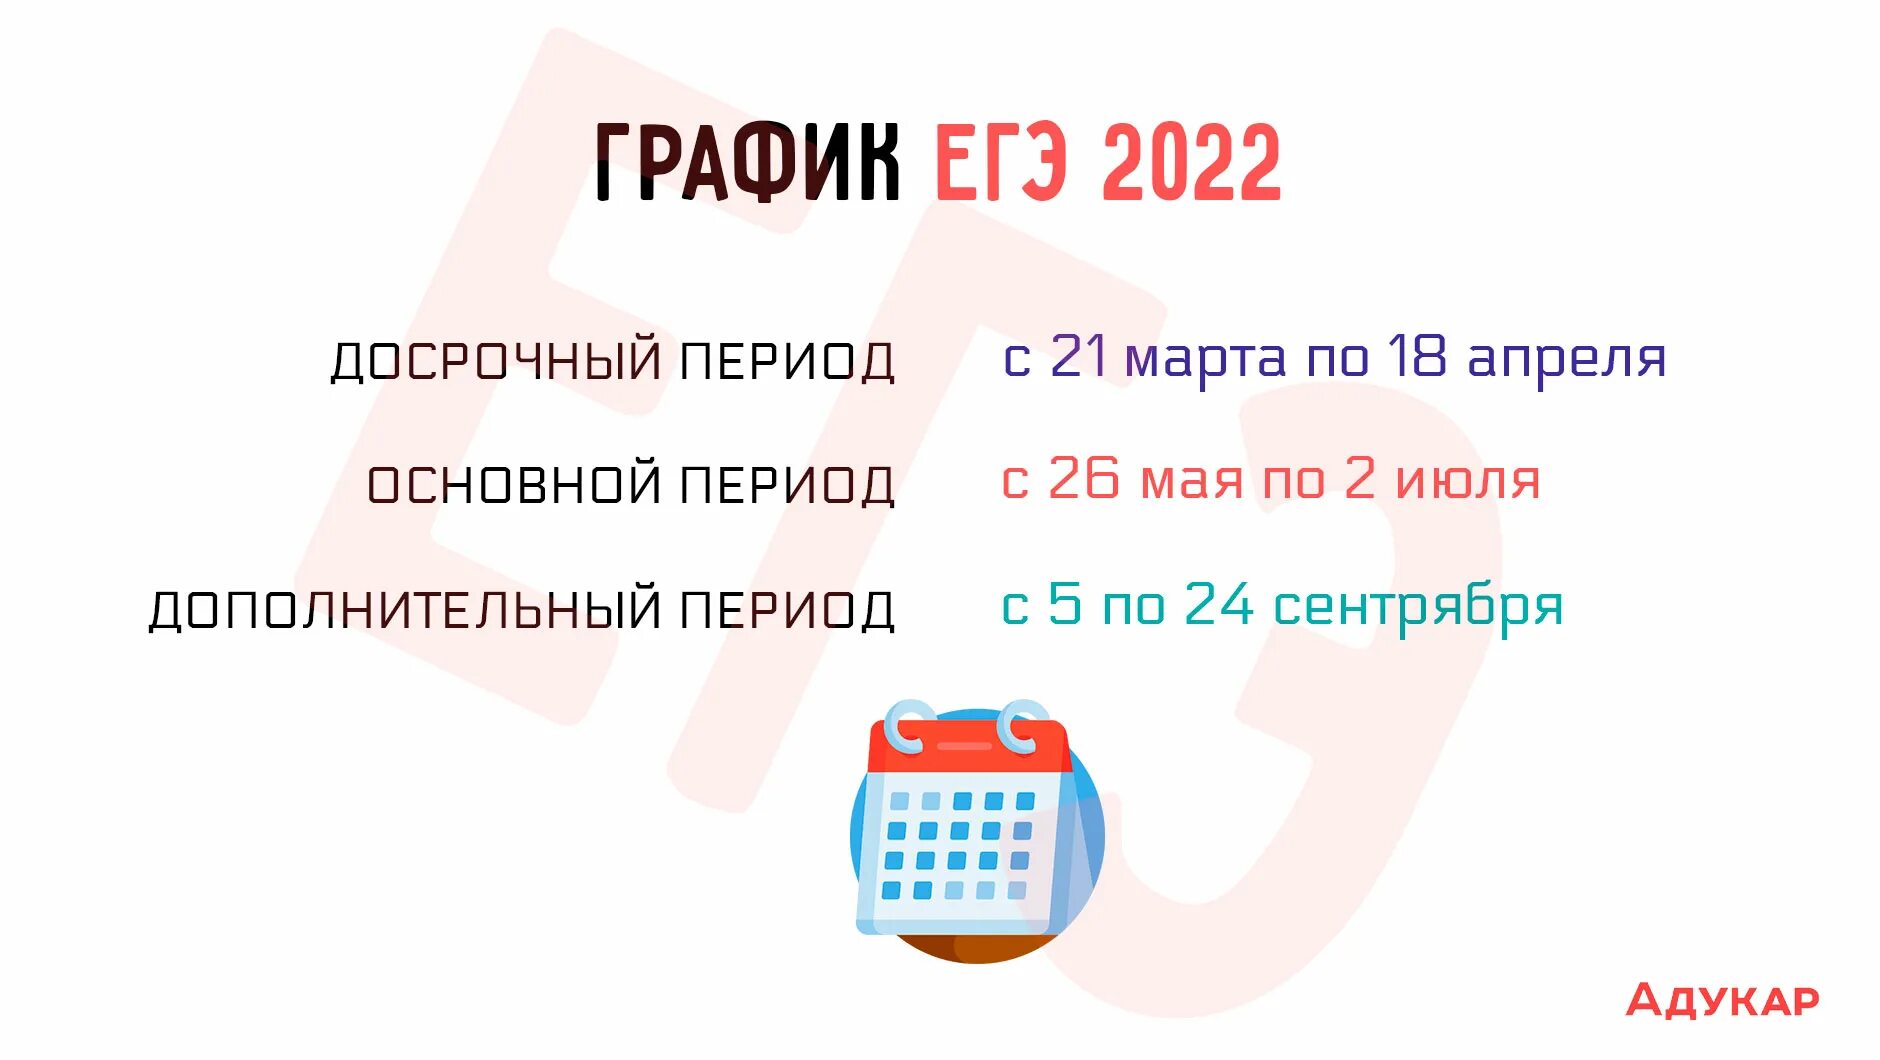 Измененные даты егэ 2024. Досрочный период ЕГЭ 2022. Даты ЕГЭ 2022. ЕГЭ 2022 досрочный период даты. Даты досрочного ЕГЭ 2022.